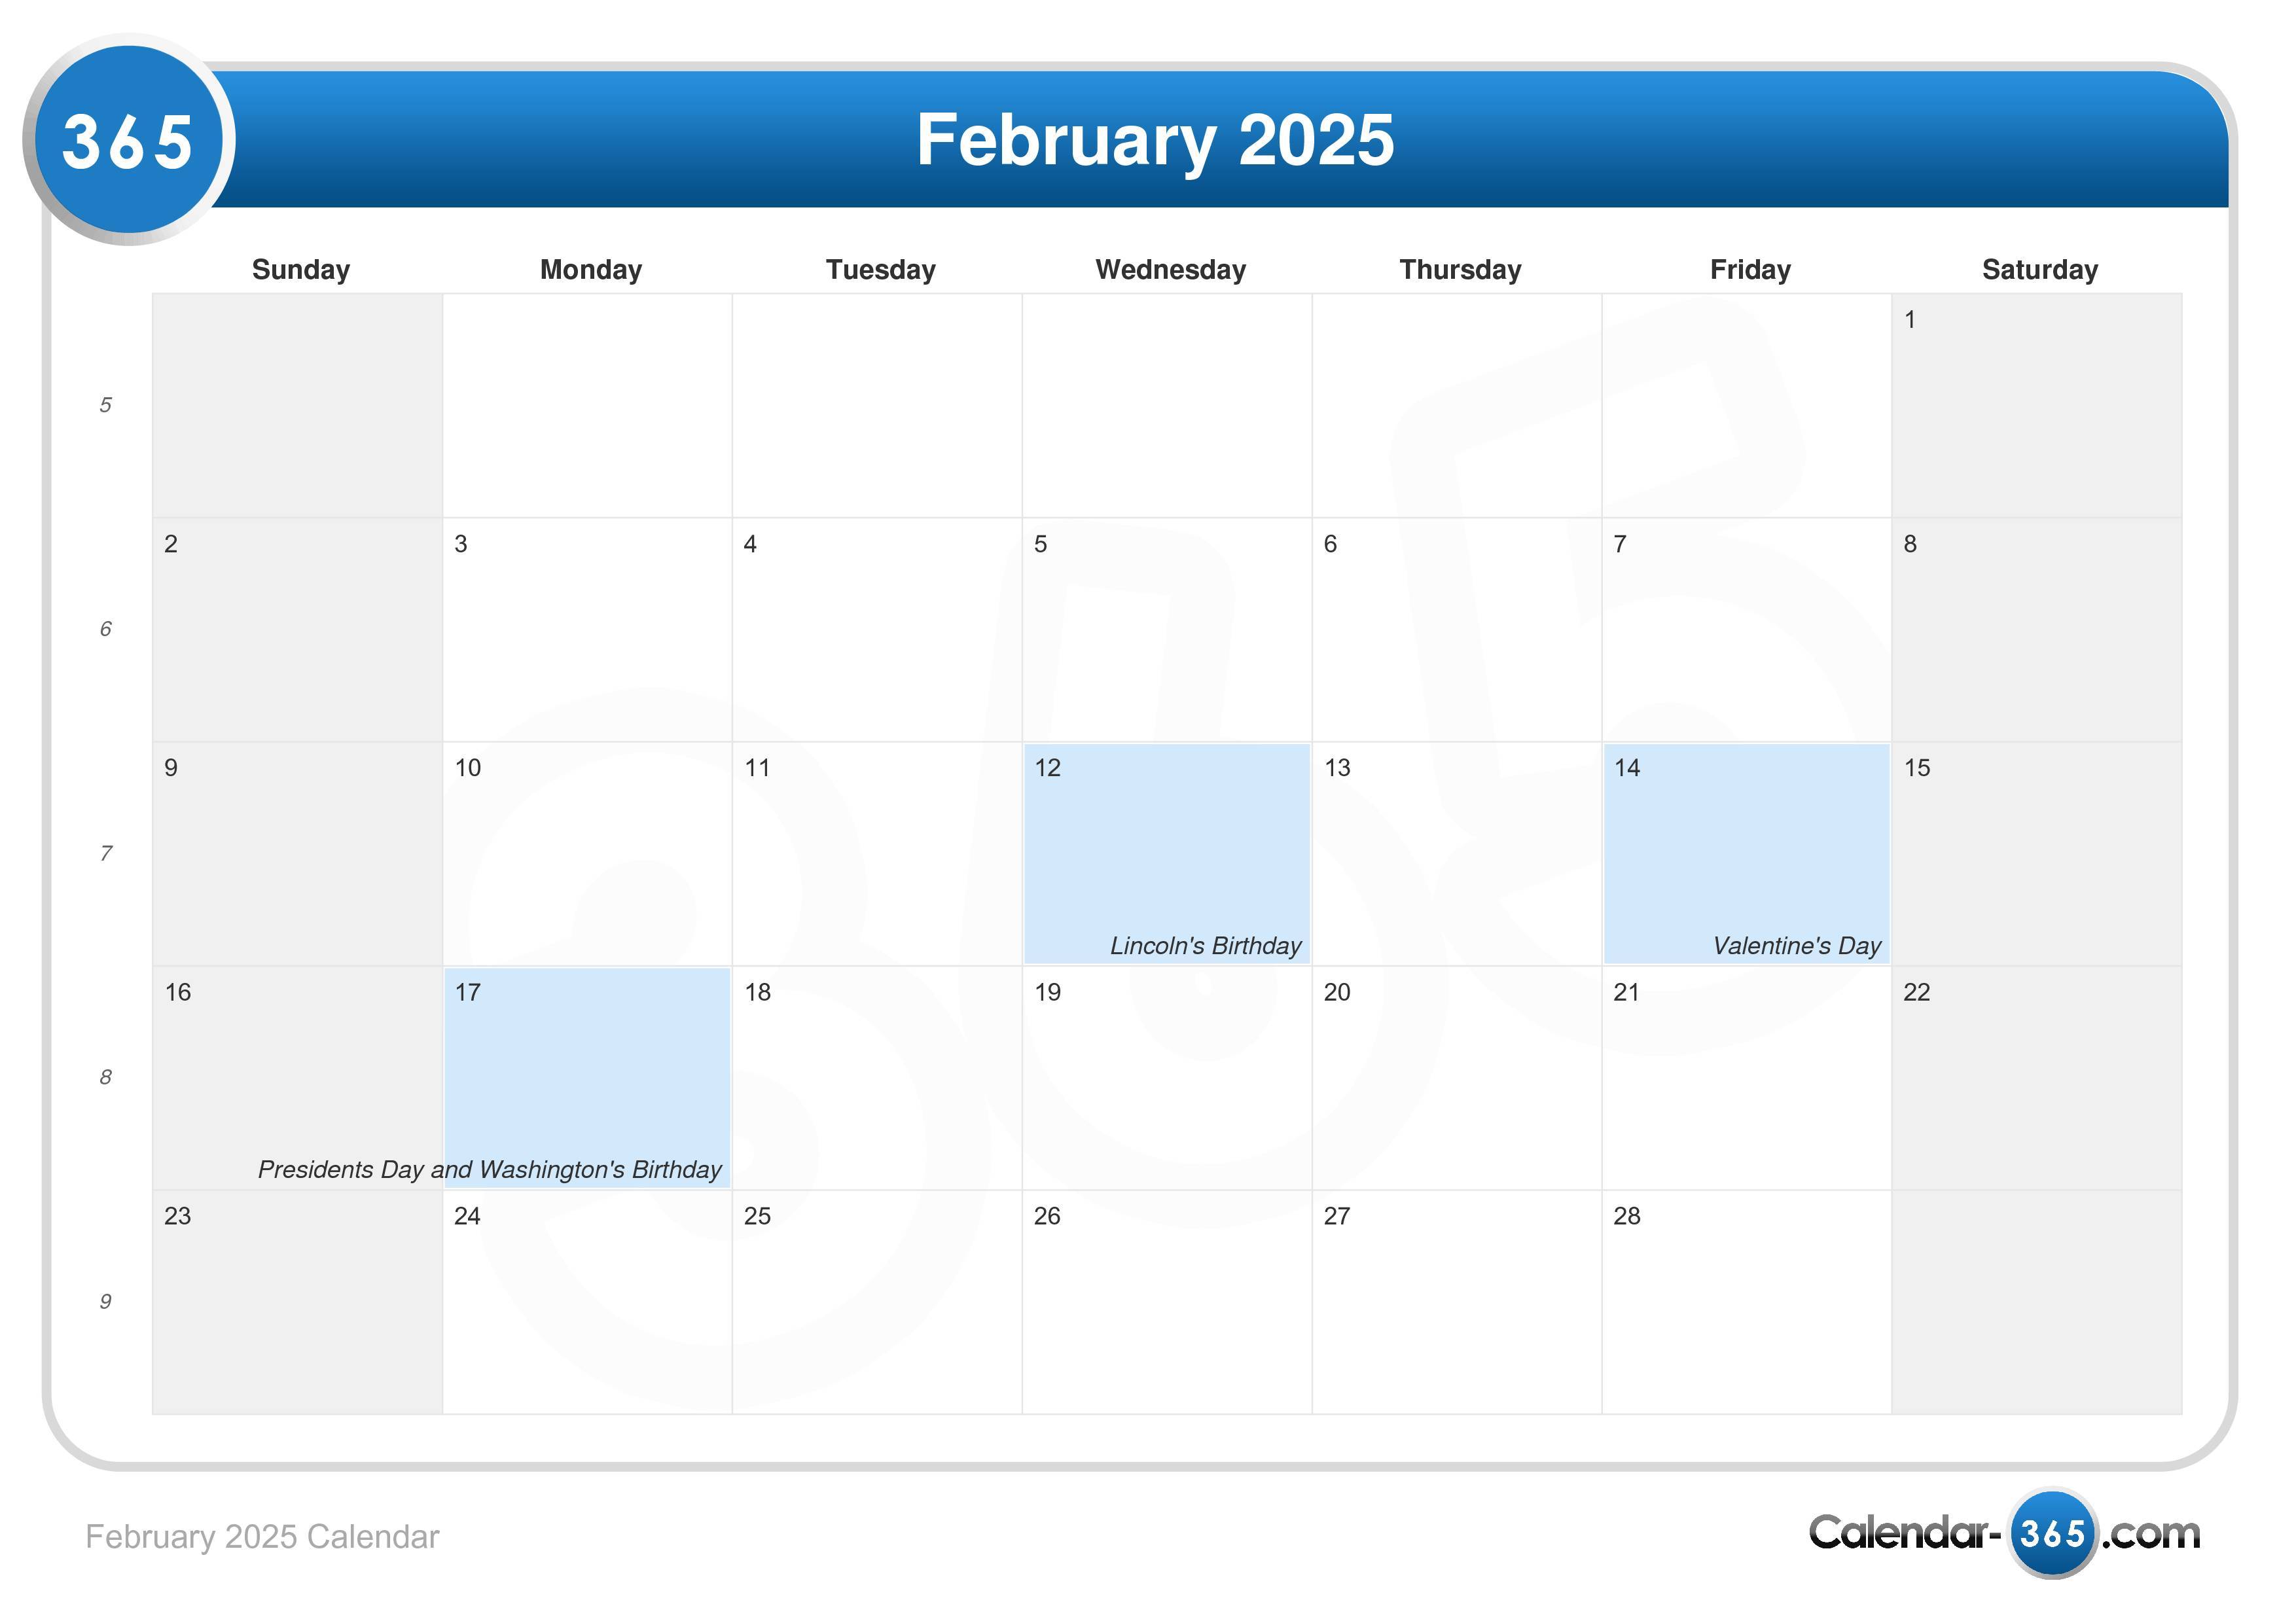 february-2025-calendar-free-printable-calendar